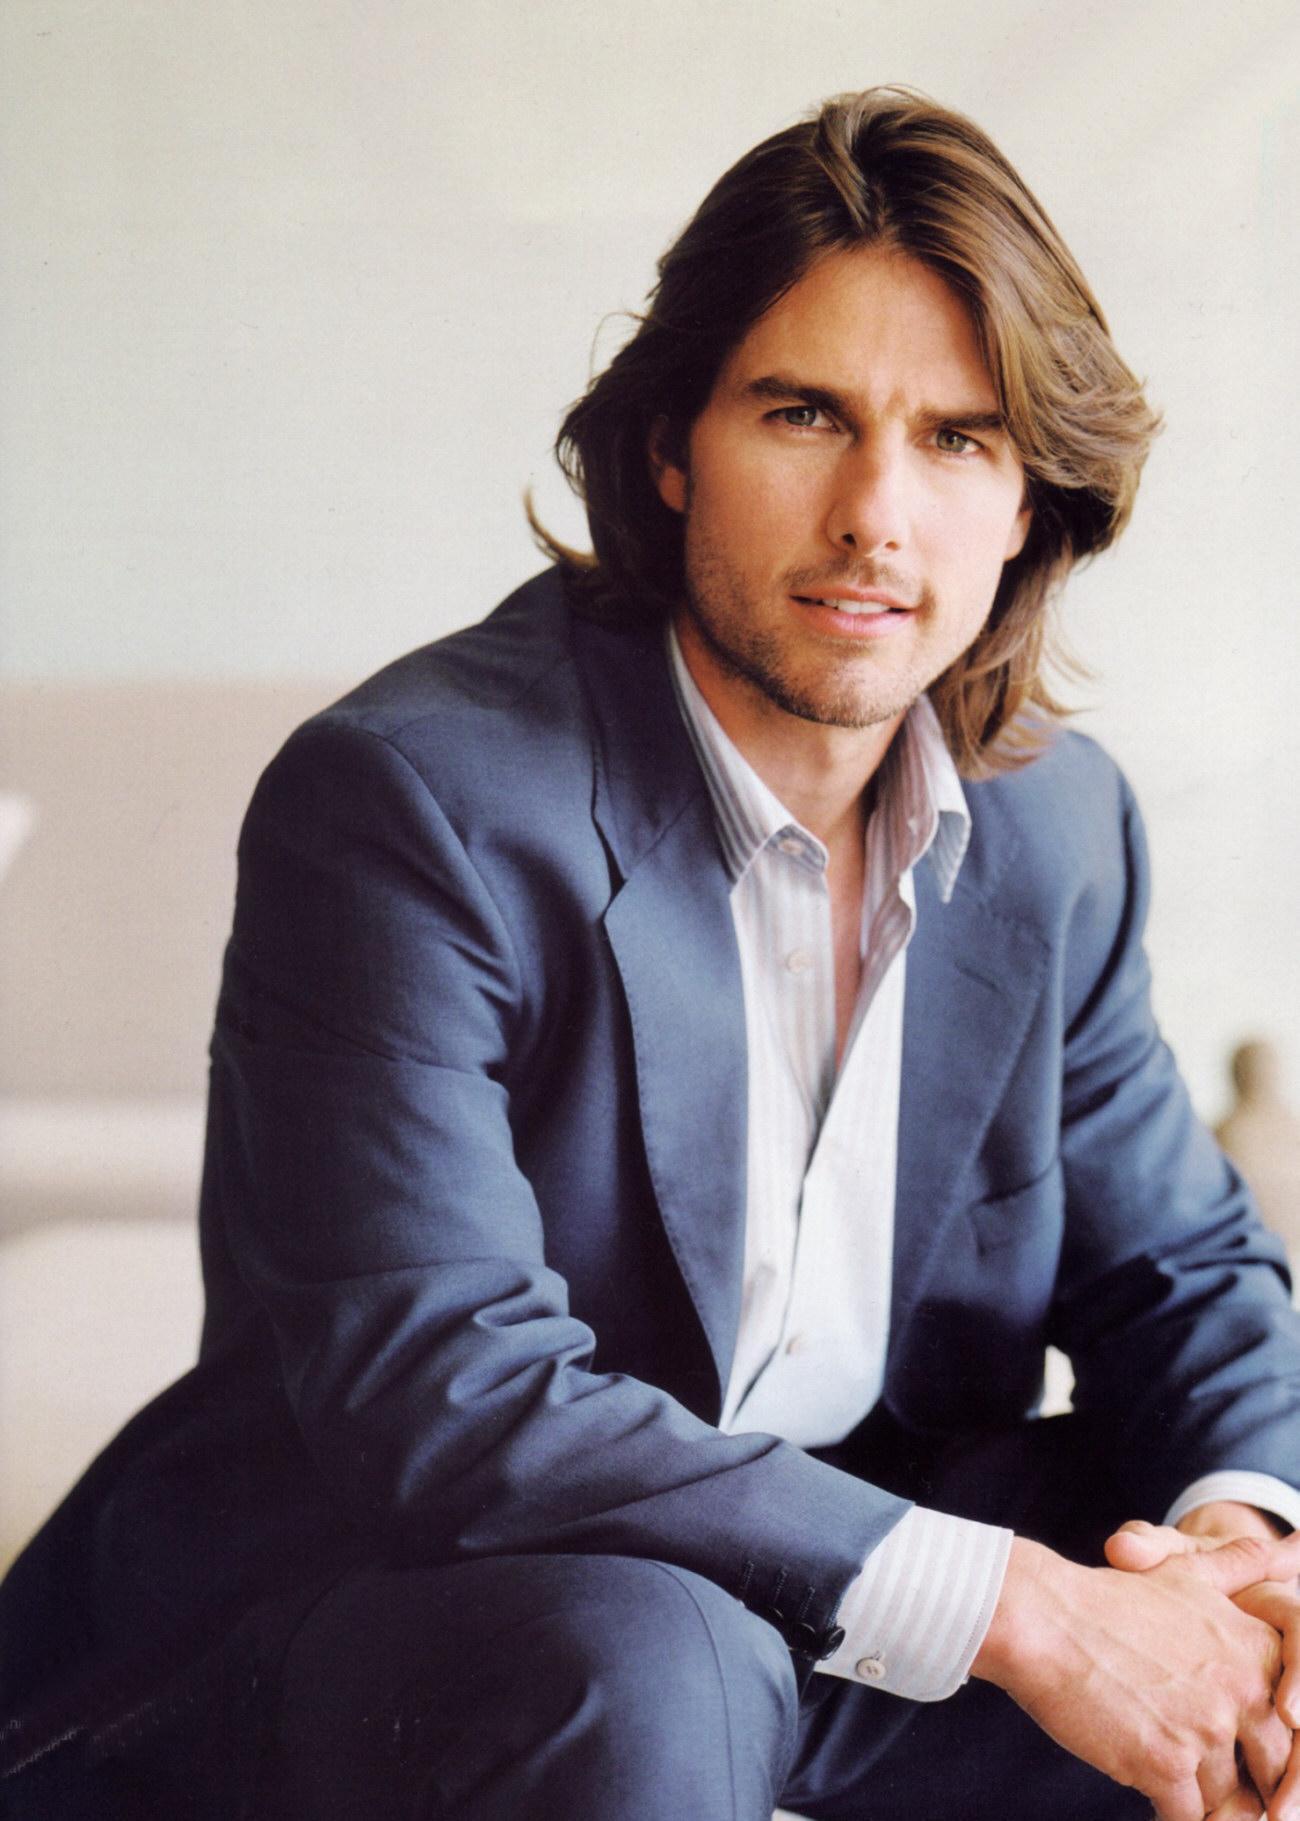 Tom Cruise i spółka, czyli znani scjentolodzy 